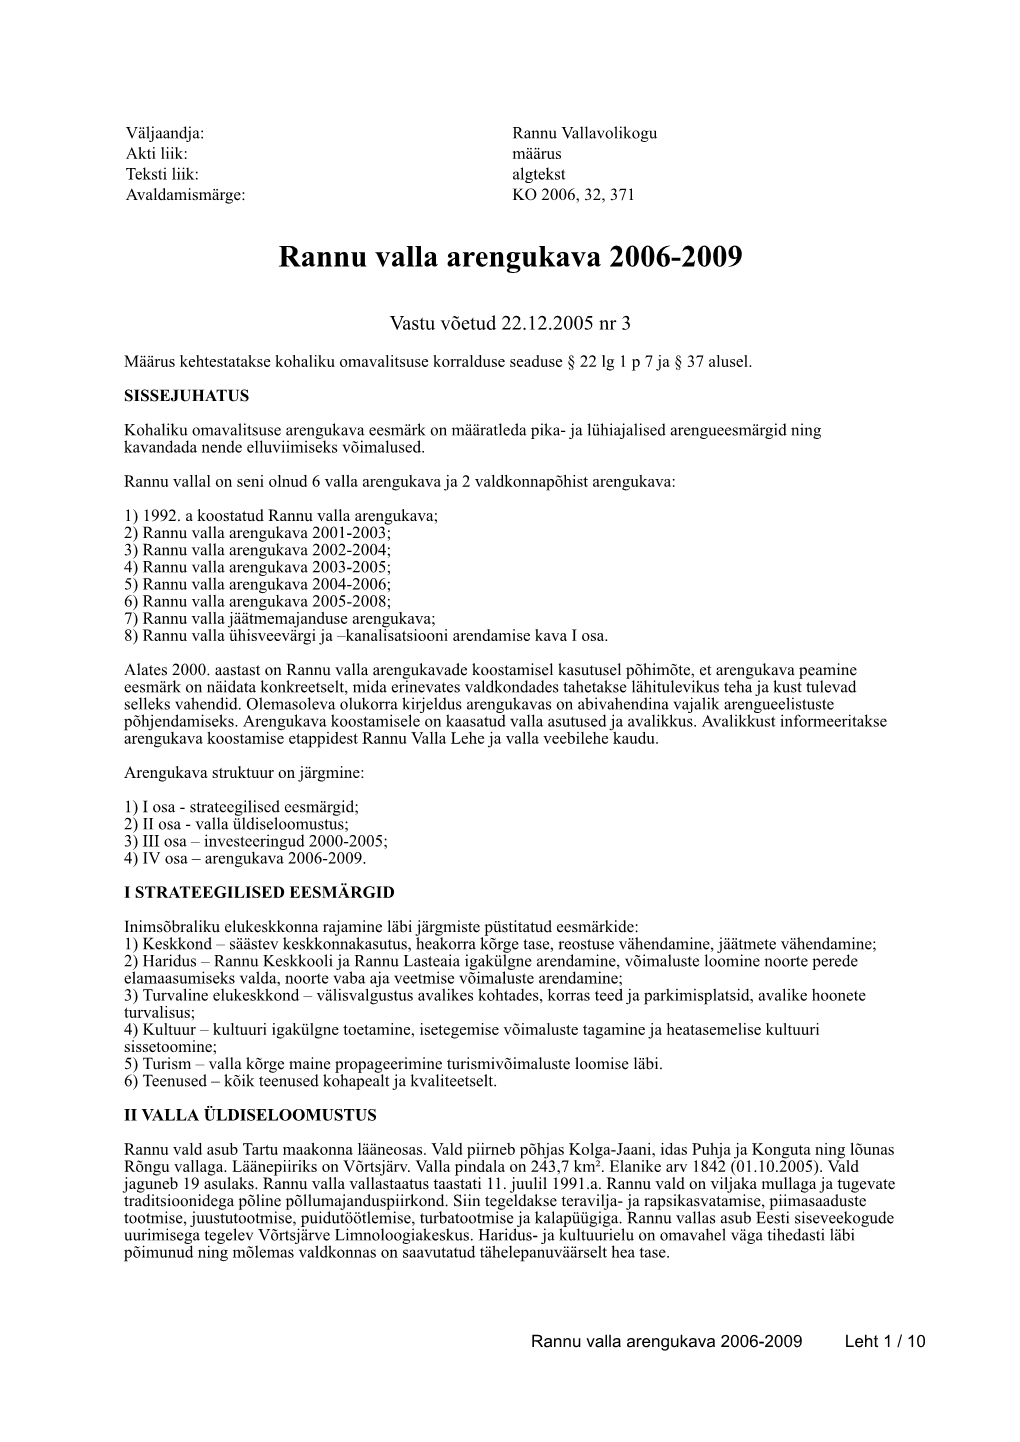 Rannu Valla Arengukava 2006-2009